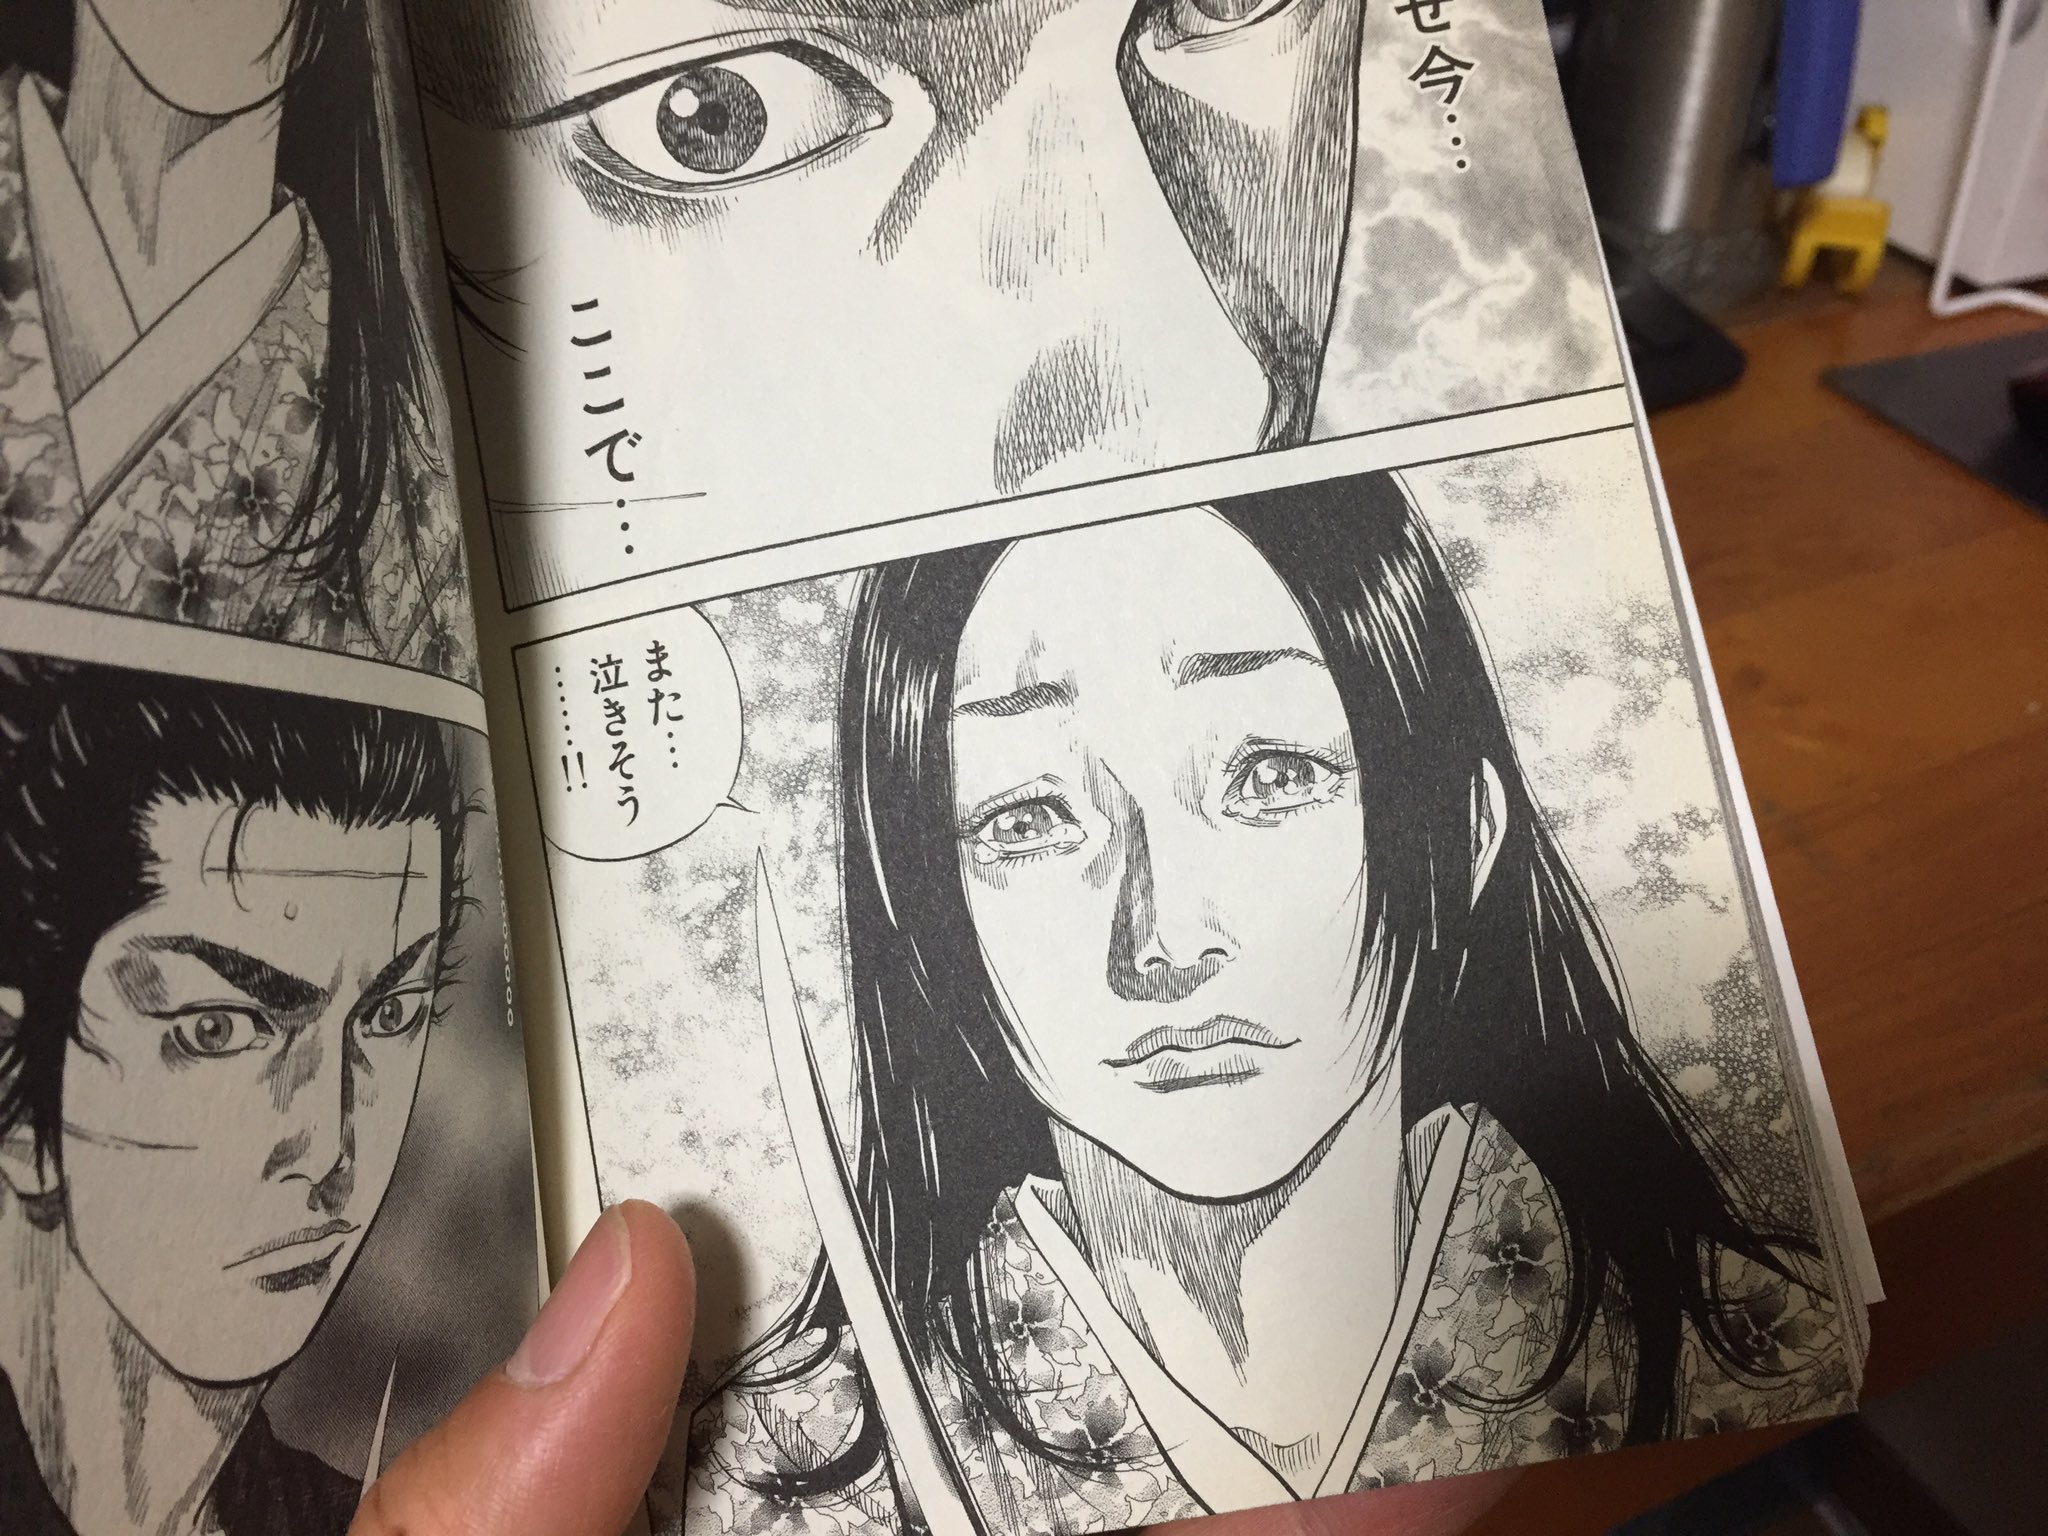 ほそかわ制作室-daisuke.h- on Twitter: "最近、夜な夜な寝る前にバガボンドを読み返してる。10巻の柳生編の”おつう”の絵